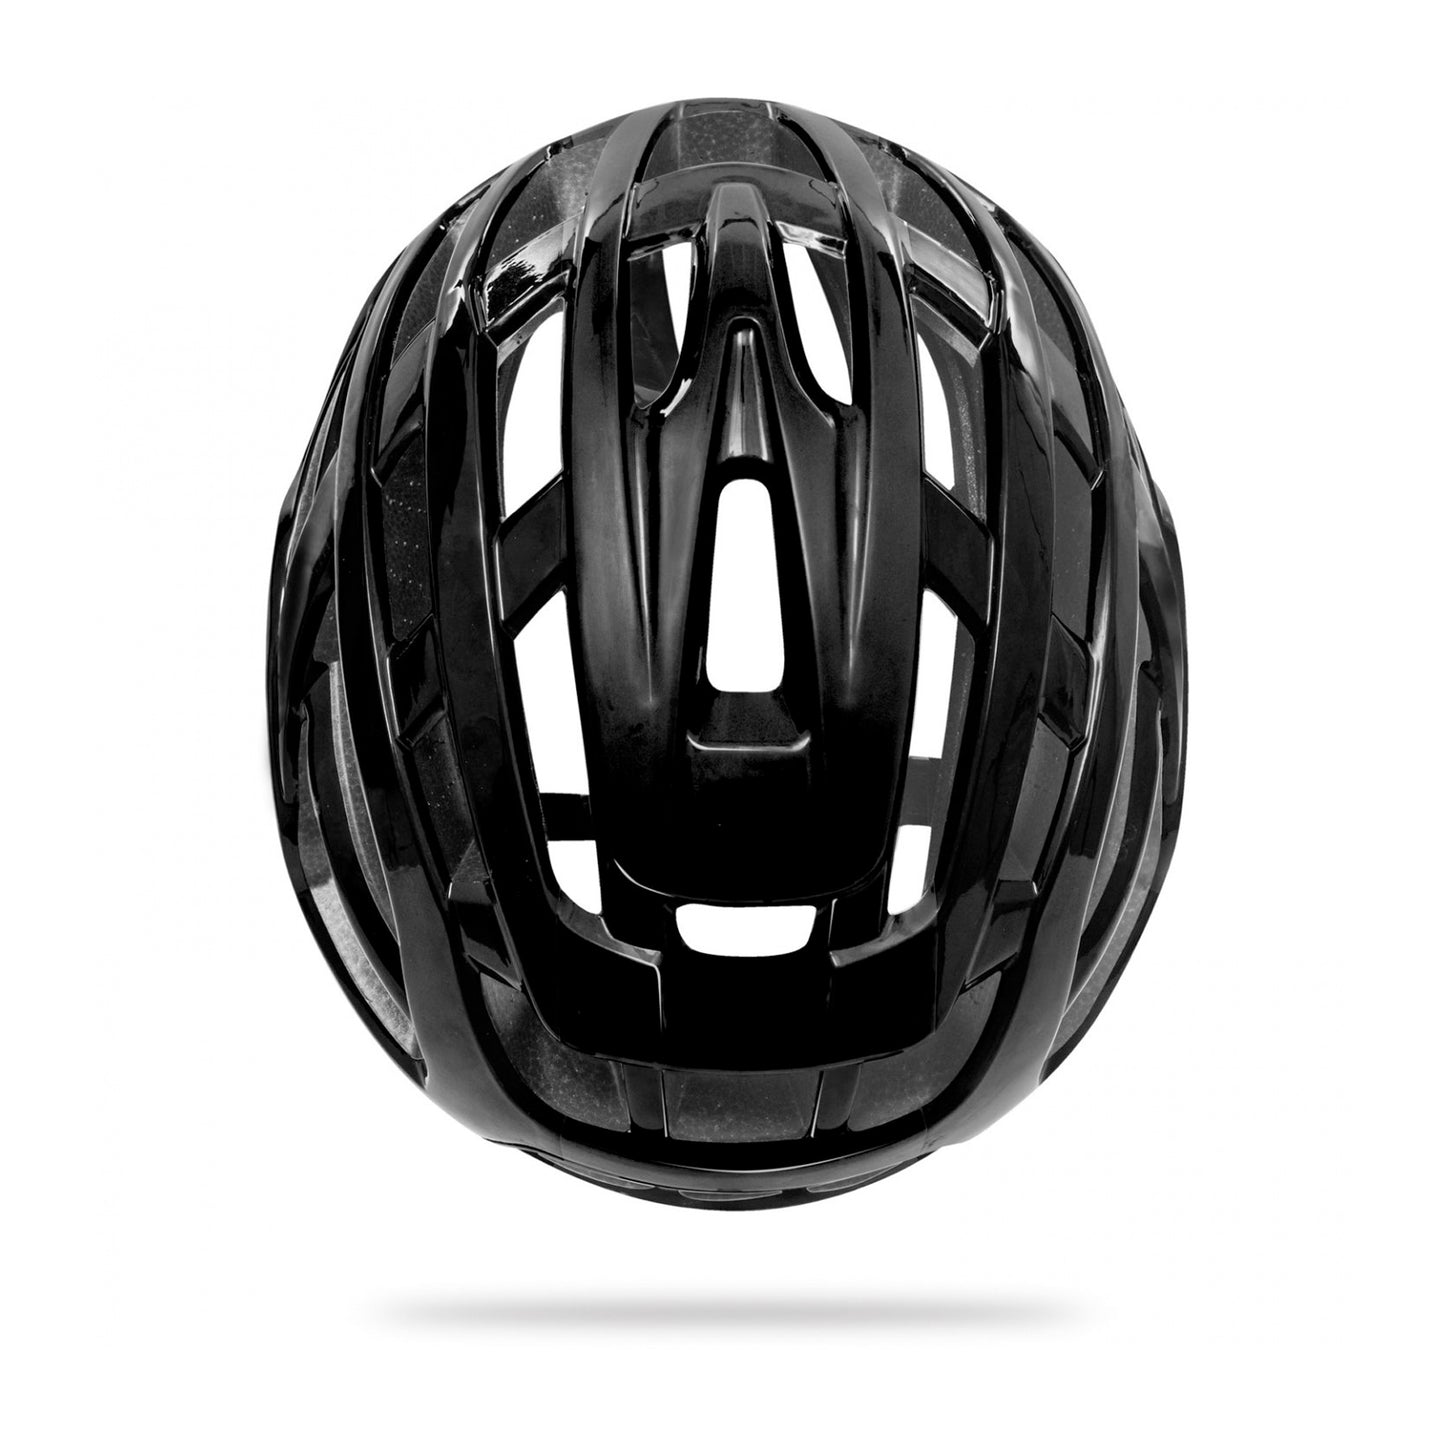 Kask Valegro WG11 Unisex Road Cycling Helmet - Black